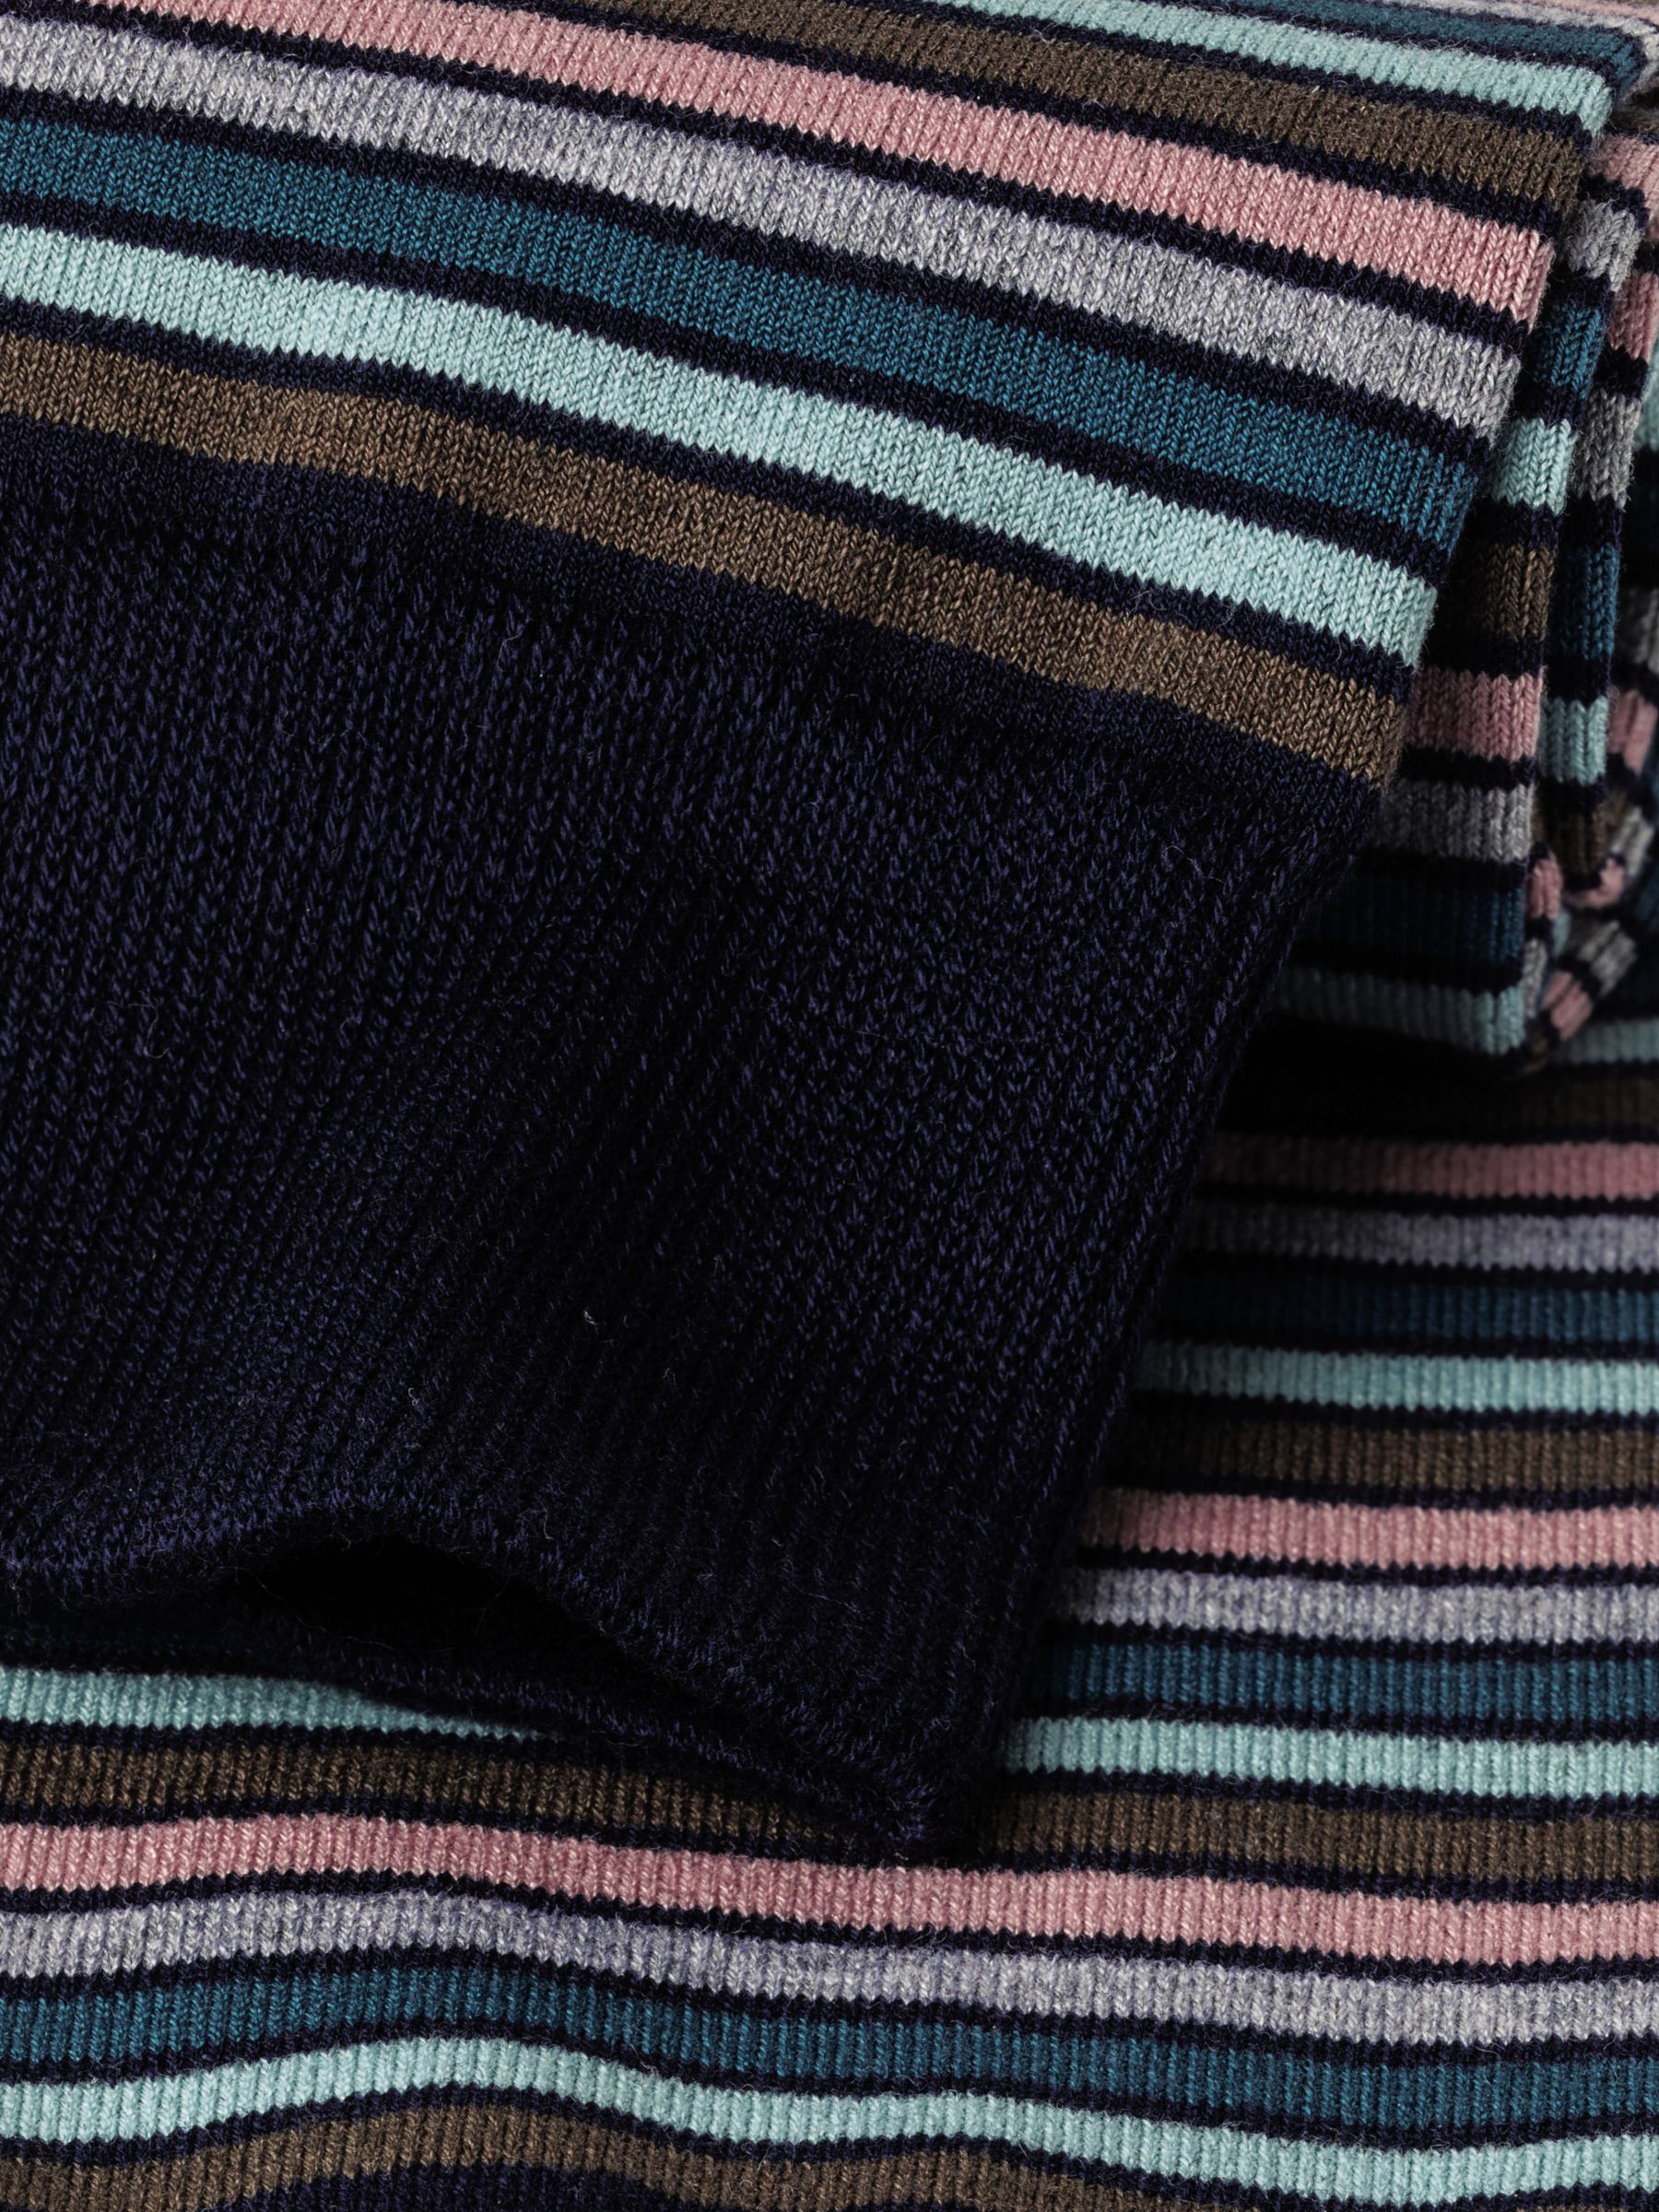 Buy Charles Tyrwhitt Melange Stripe Socks Online at johnlewis.com